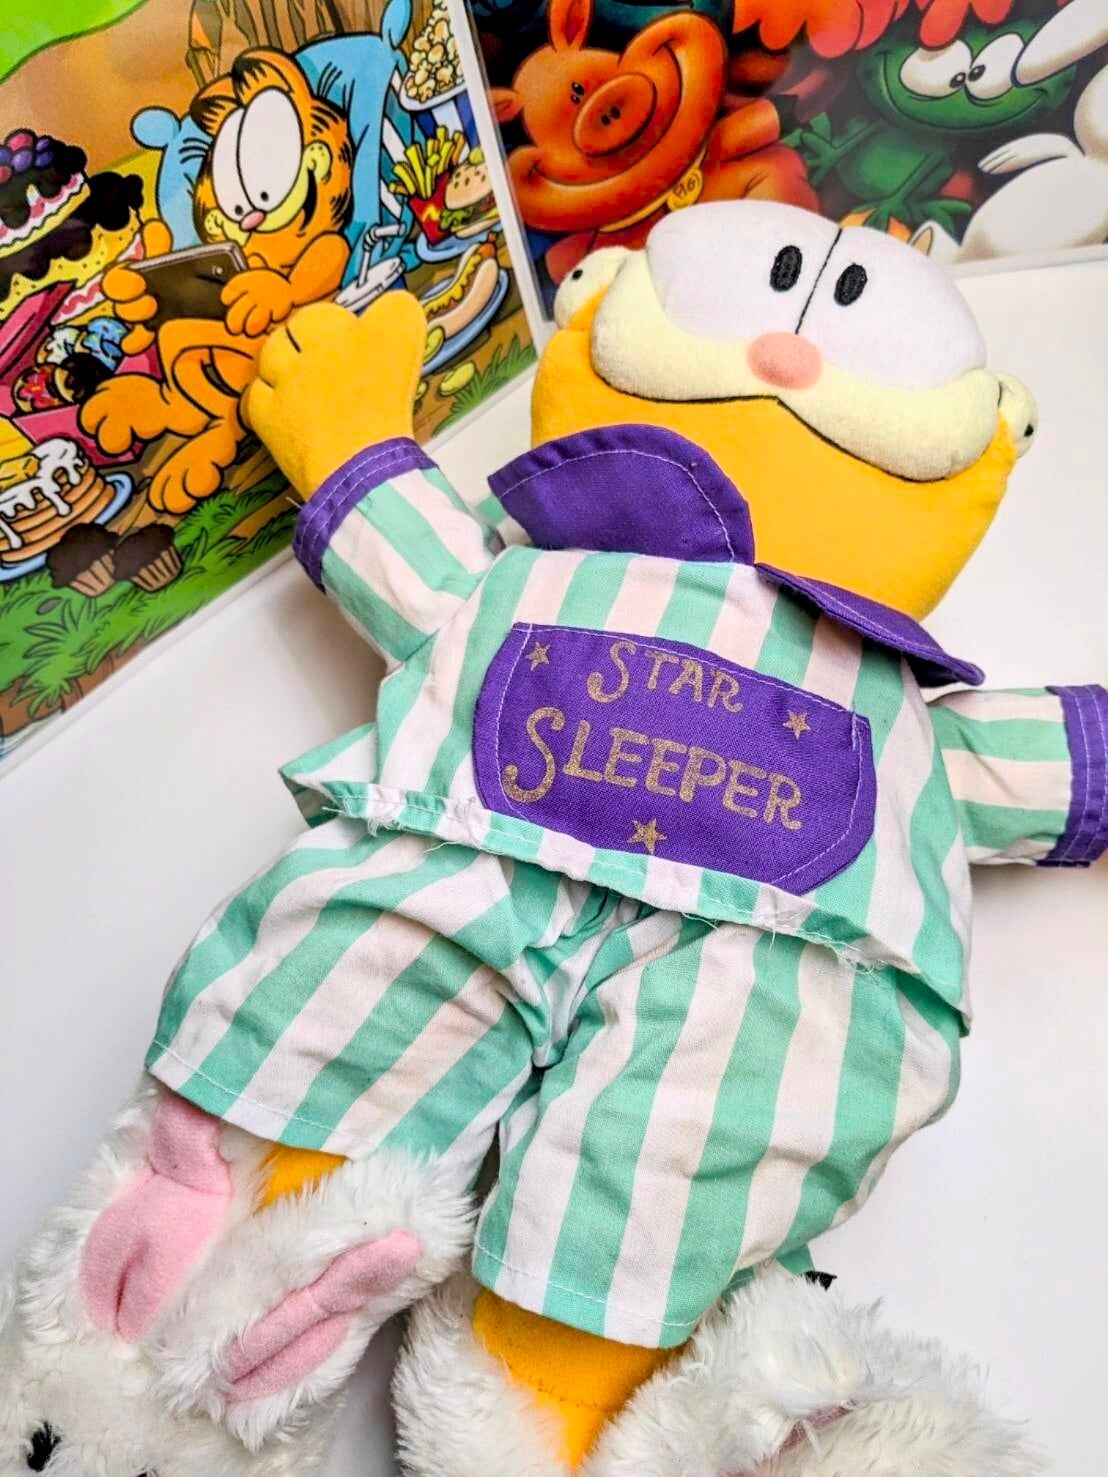 【ガーフィールド（Garfield）⑥】「STAR SLEEPER パジャマ」1978年製 〘VINTAGE ビンテージ〙 ぬいぐるみ 〚アメリカン雑貨 アメトイ〛